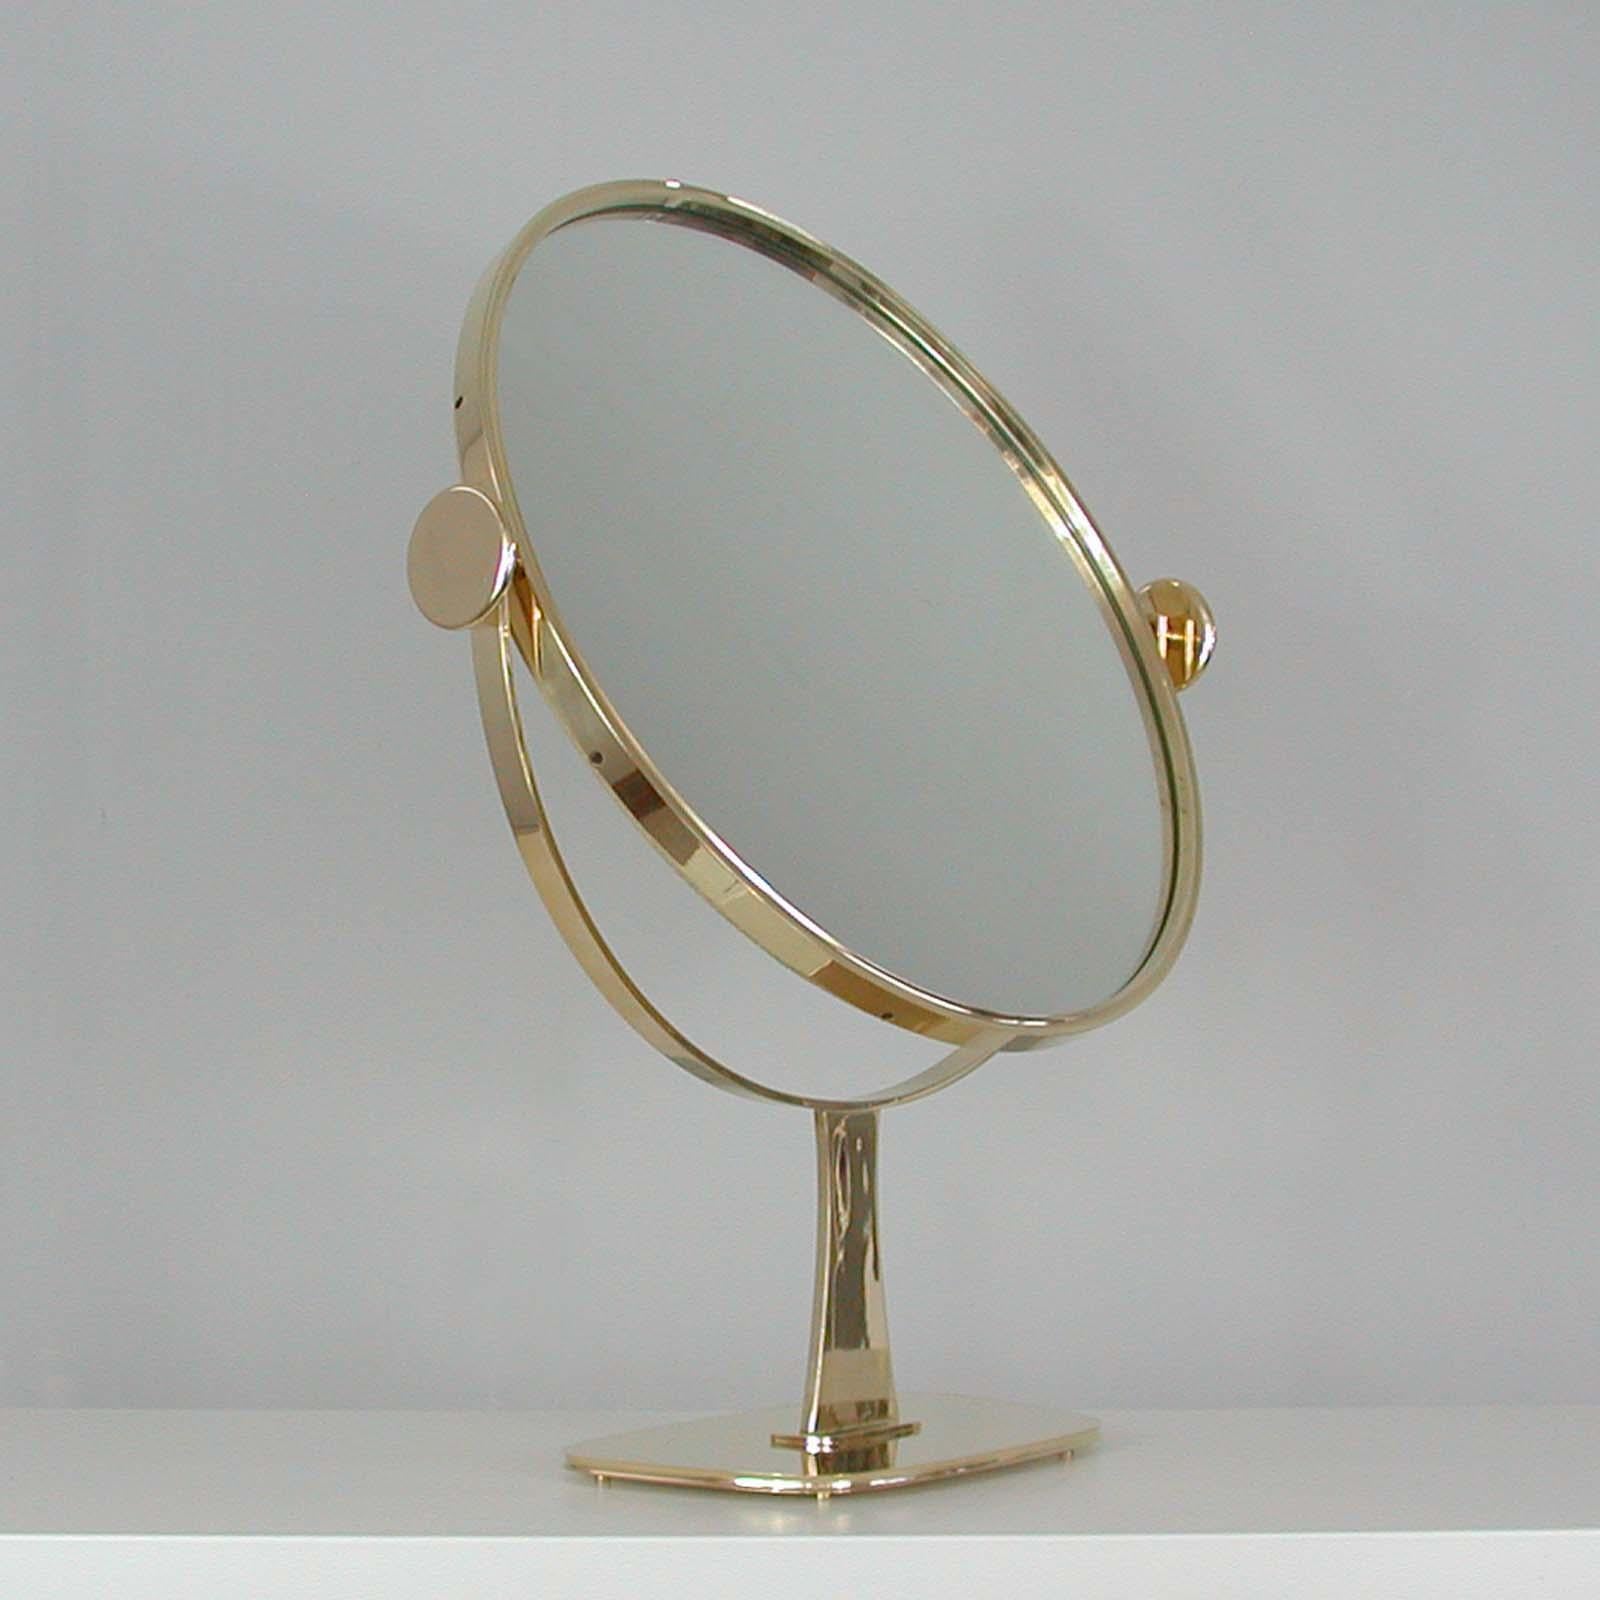 Midcentury German Brass Table Mirror by Vereinigte Werkstätten München, 1960s For Sale 13